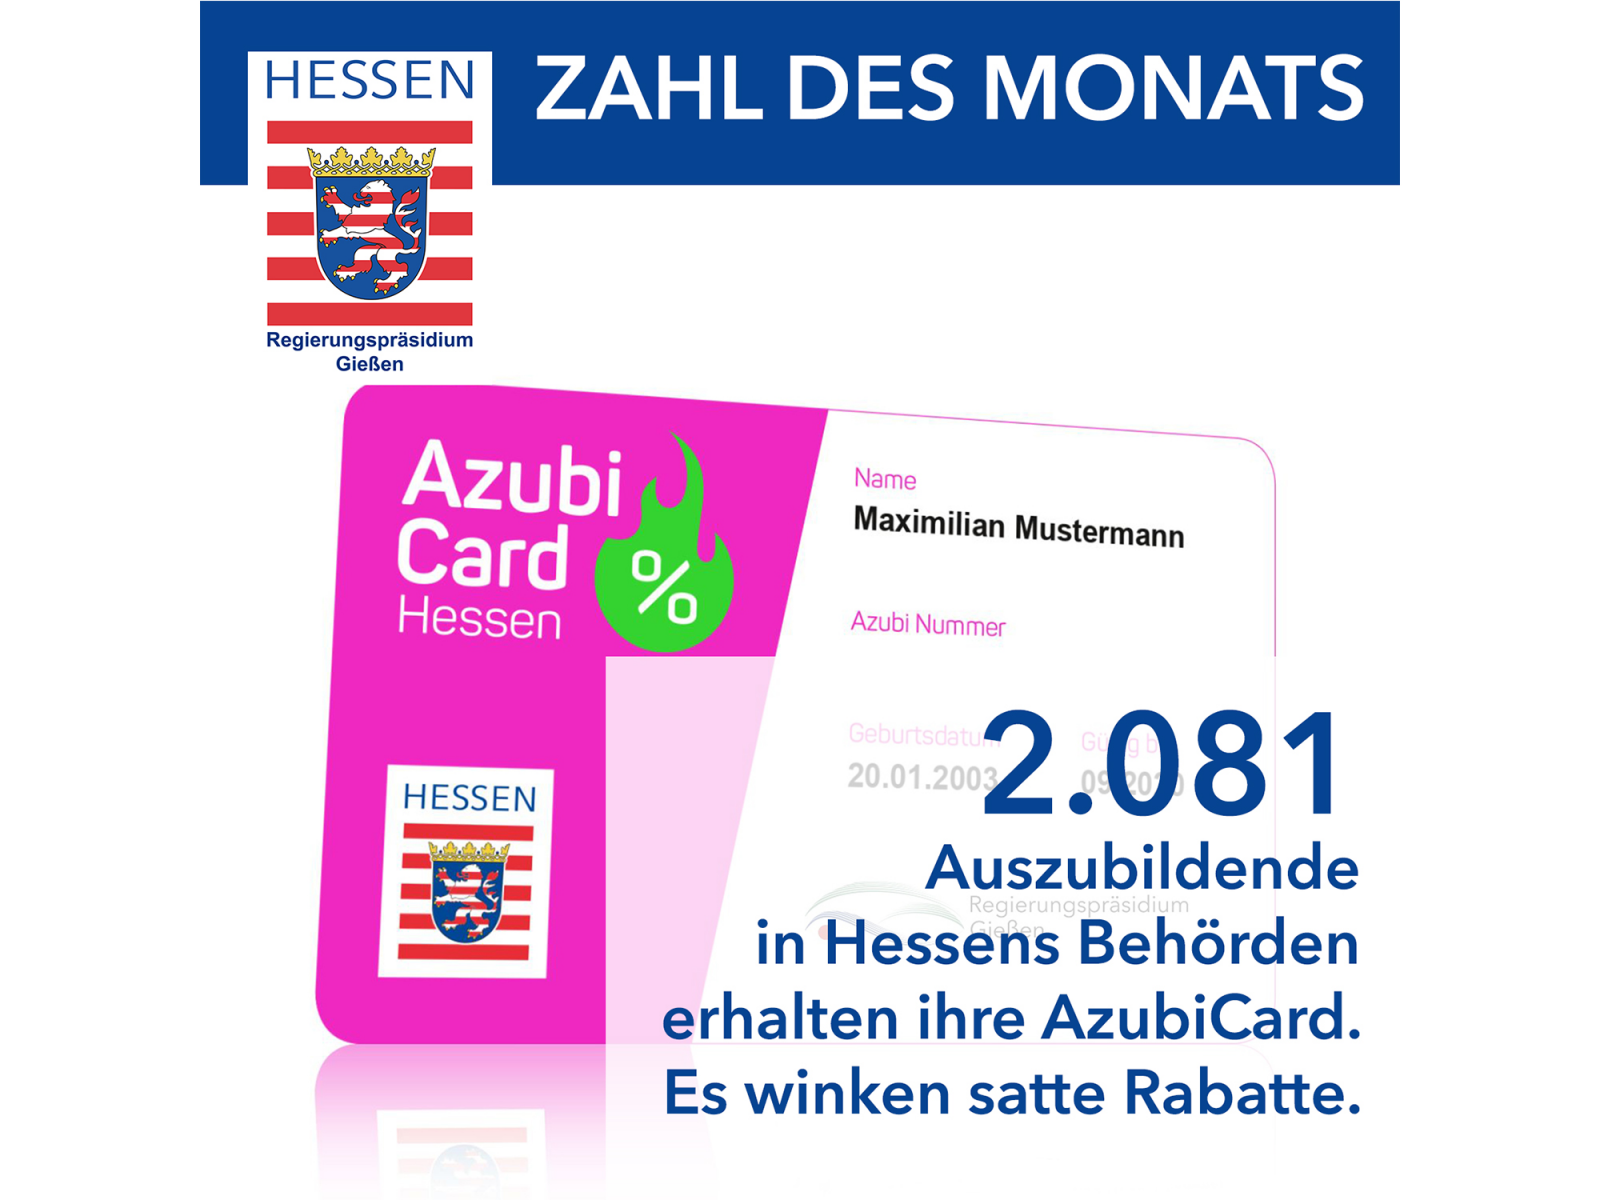 Regierungspräsidium Gießen ist zuständig für Auszubildende in Hessens Behörden – AzubiCard wird verschickt